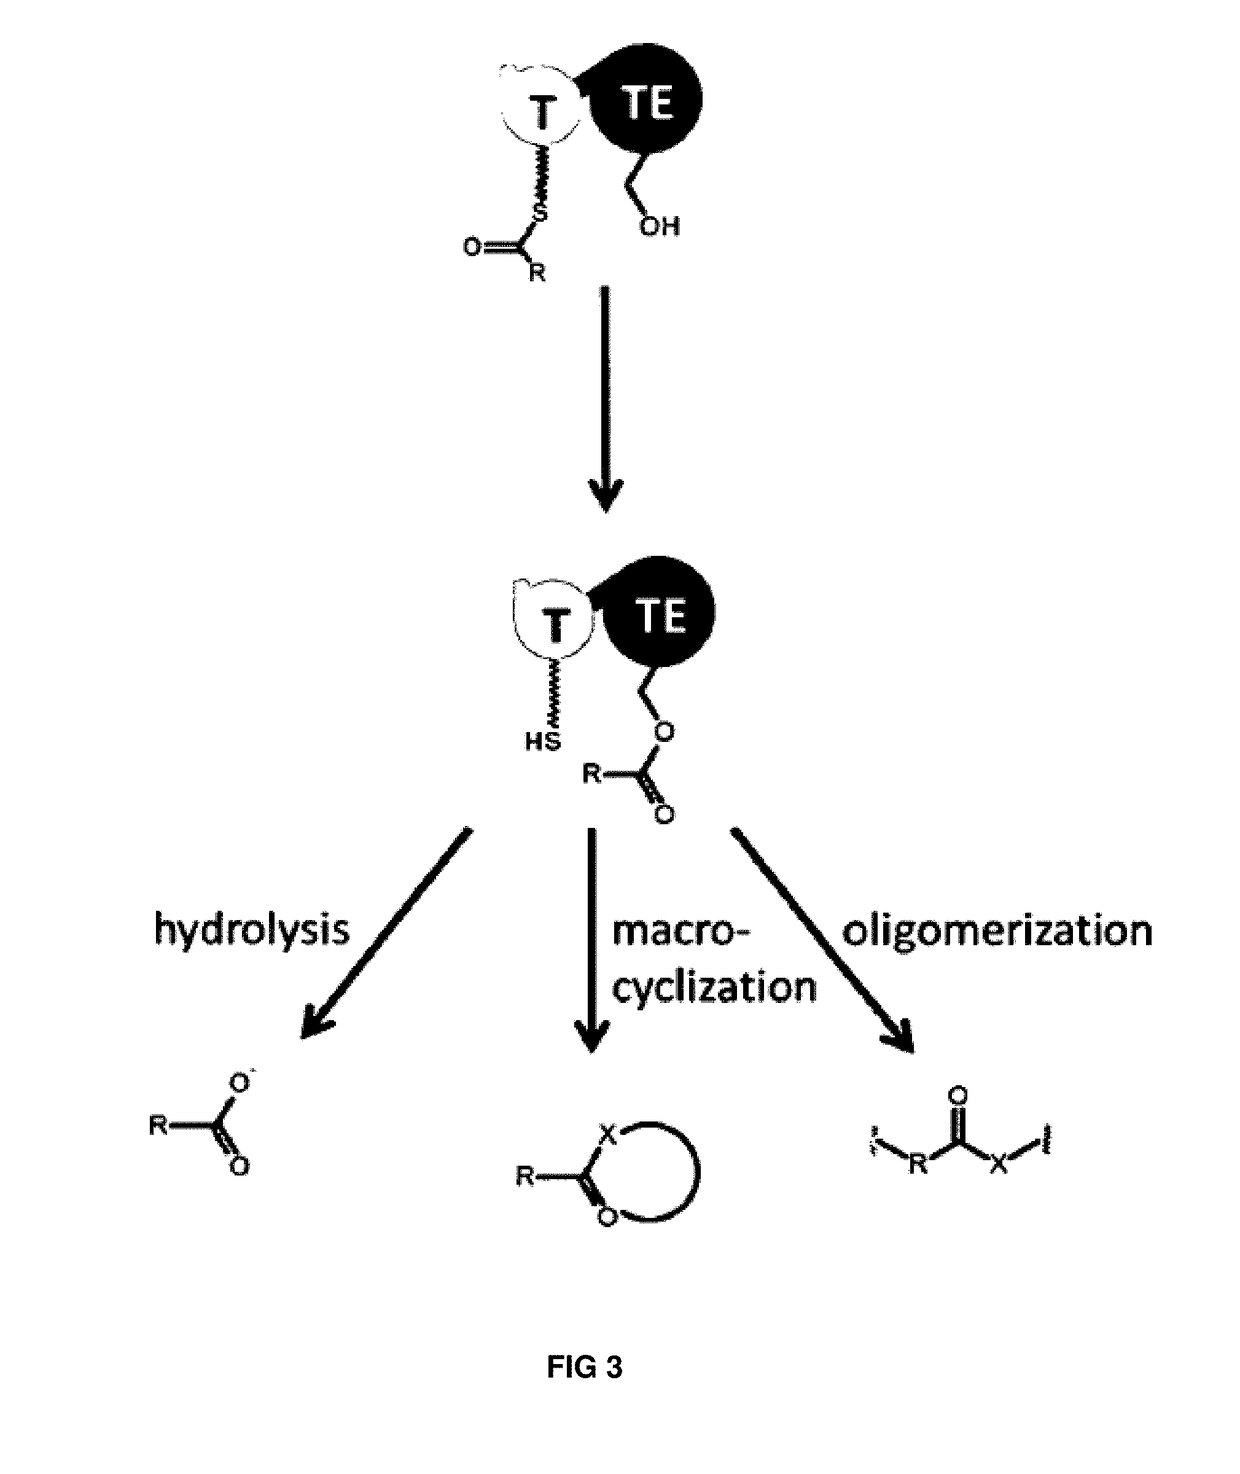 Artificial non-ribosomal peptide synthetases